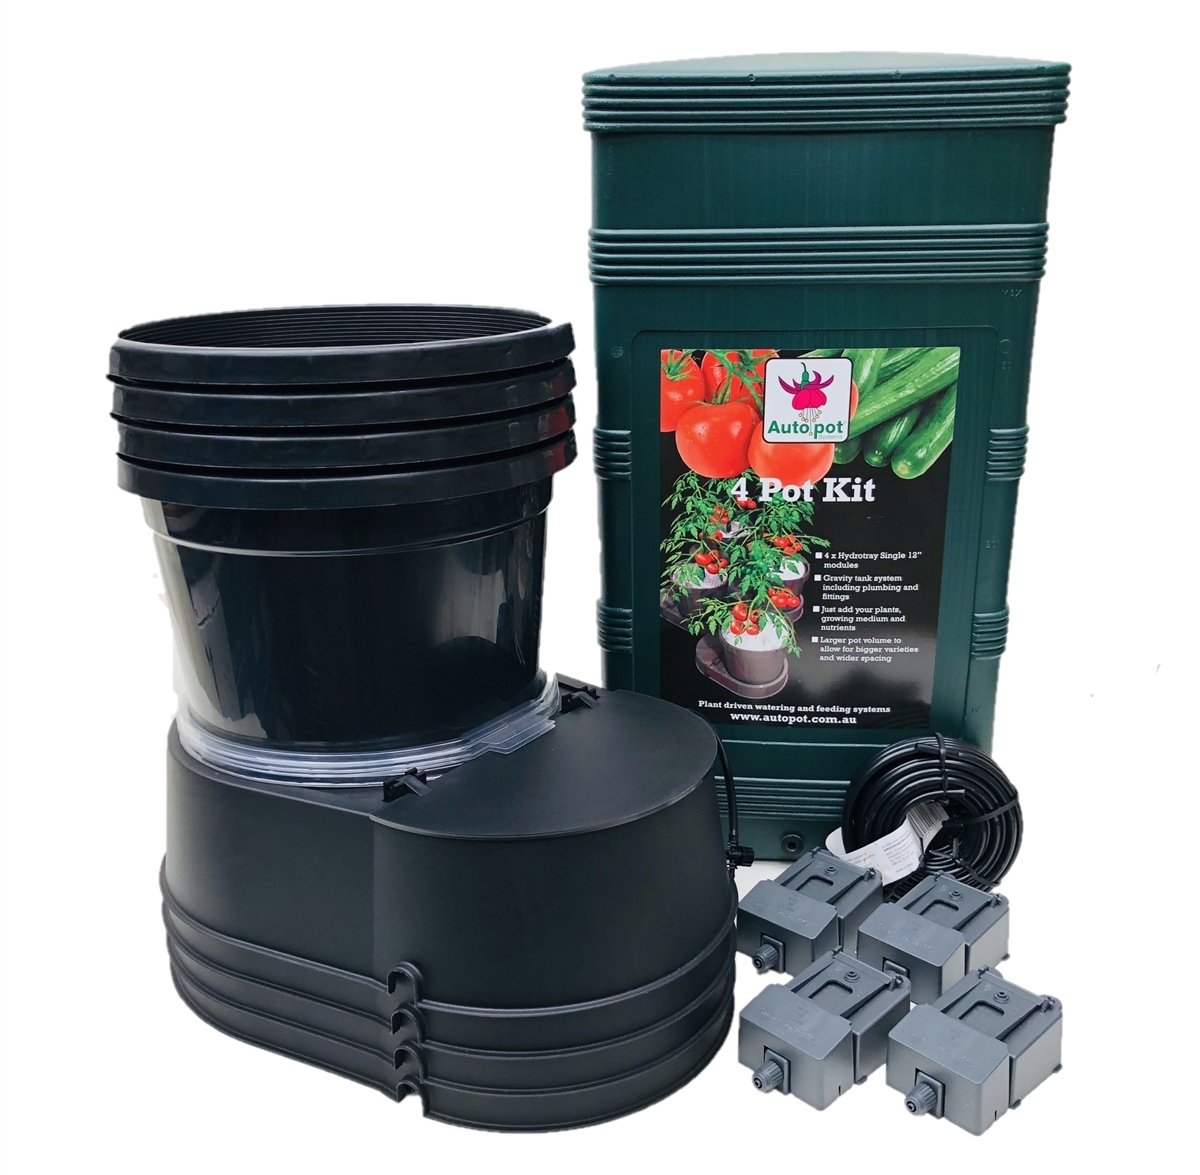 Hydrotray Single - 4 Pot Kit